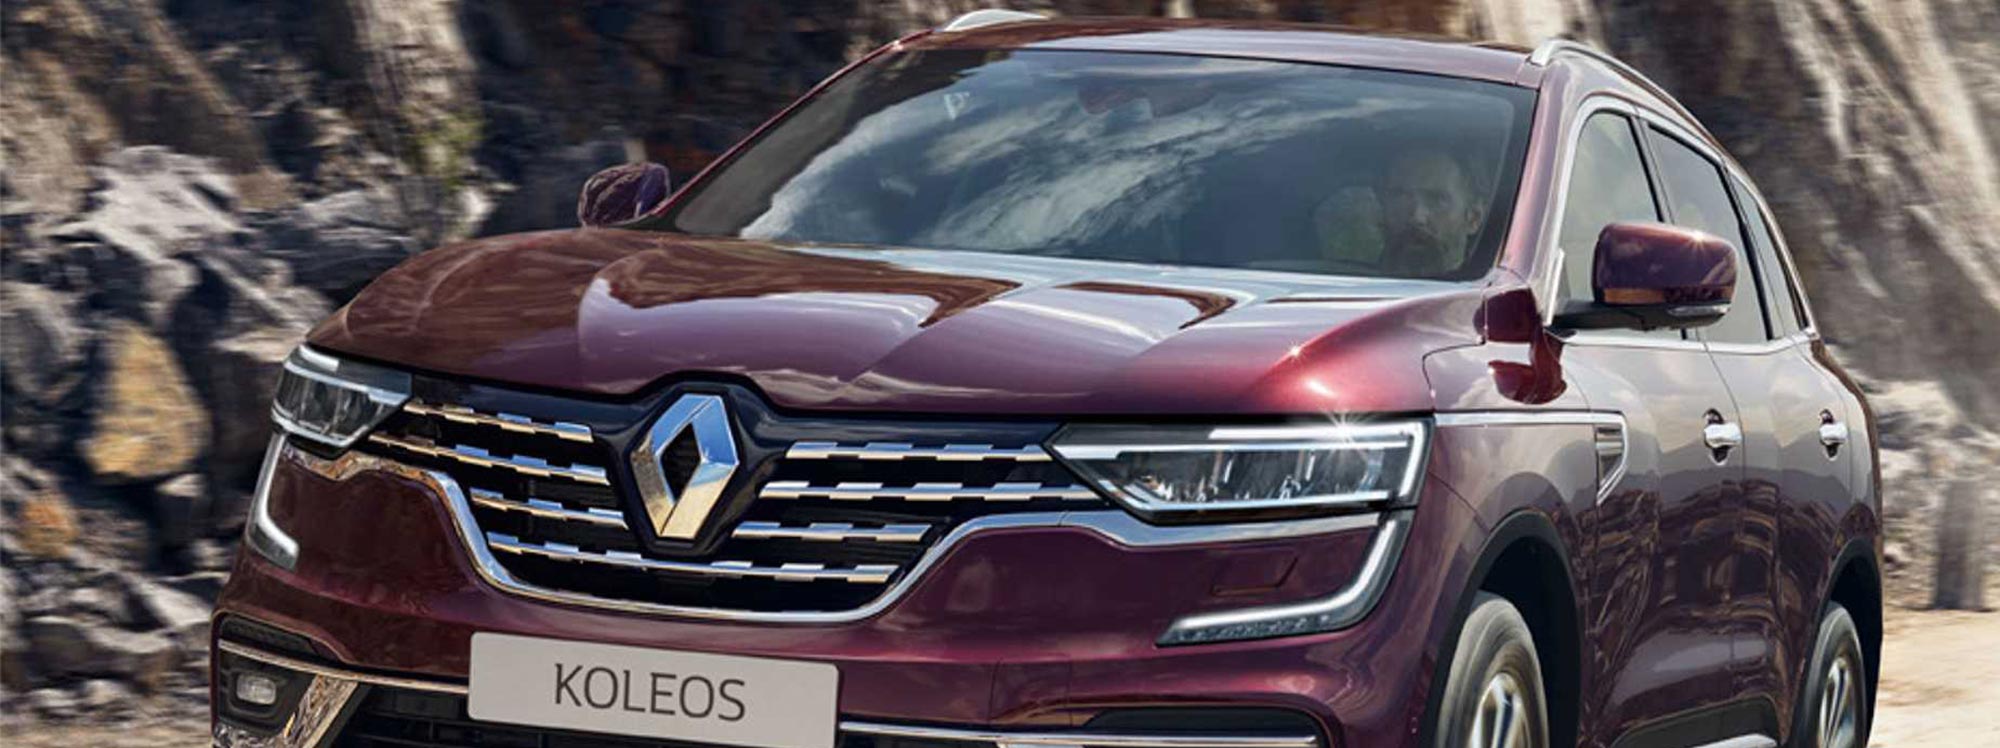 Renault: segunda generación de Koleos en Ecuador